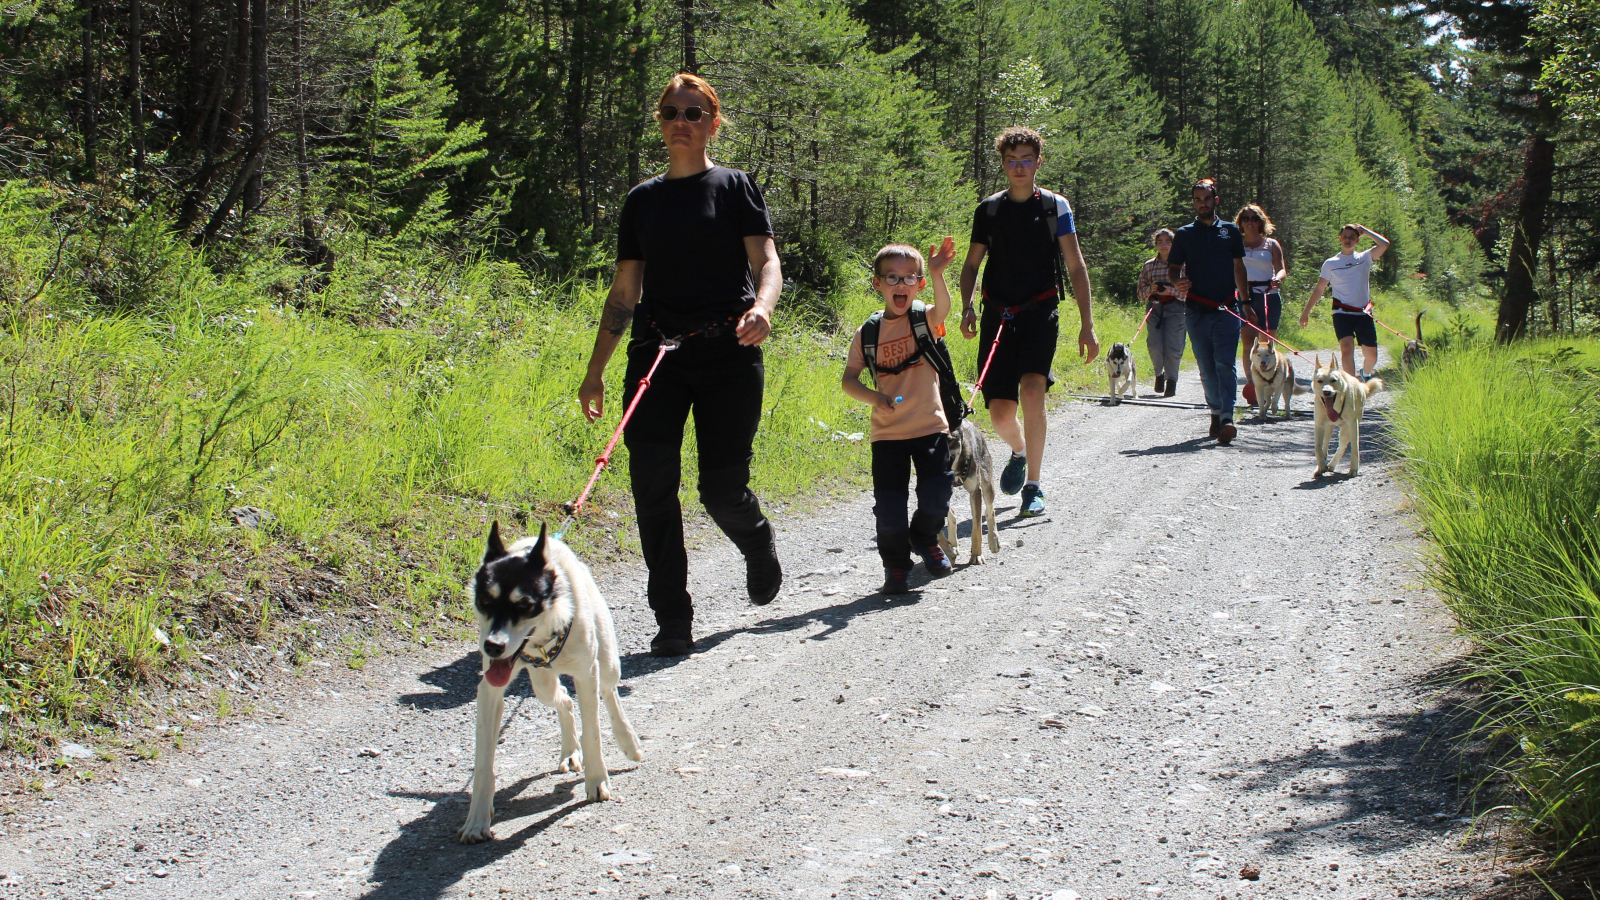 Cani-hike with Trott husky